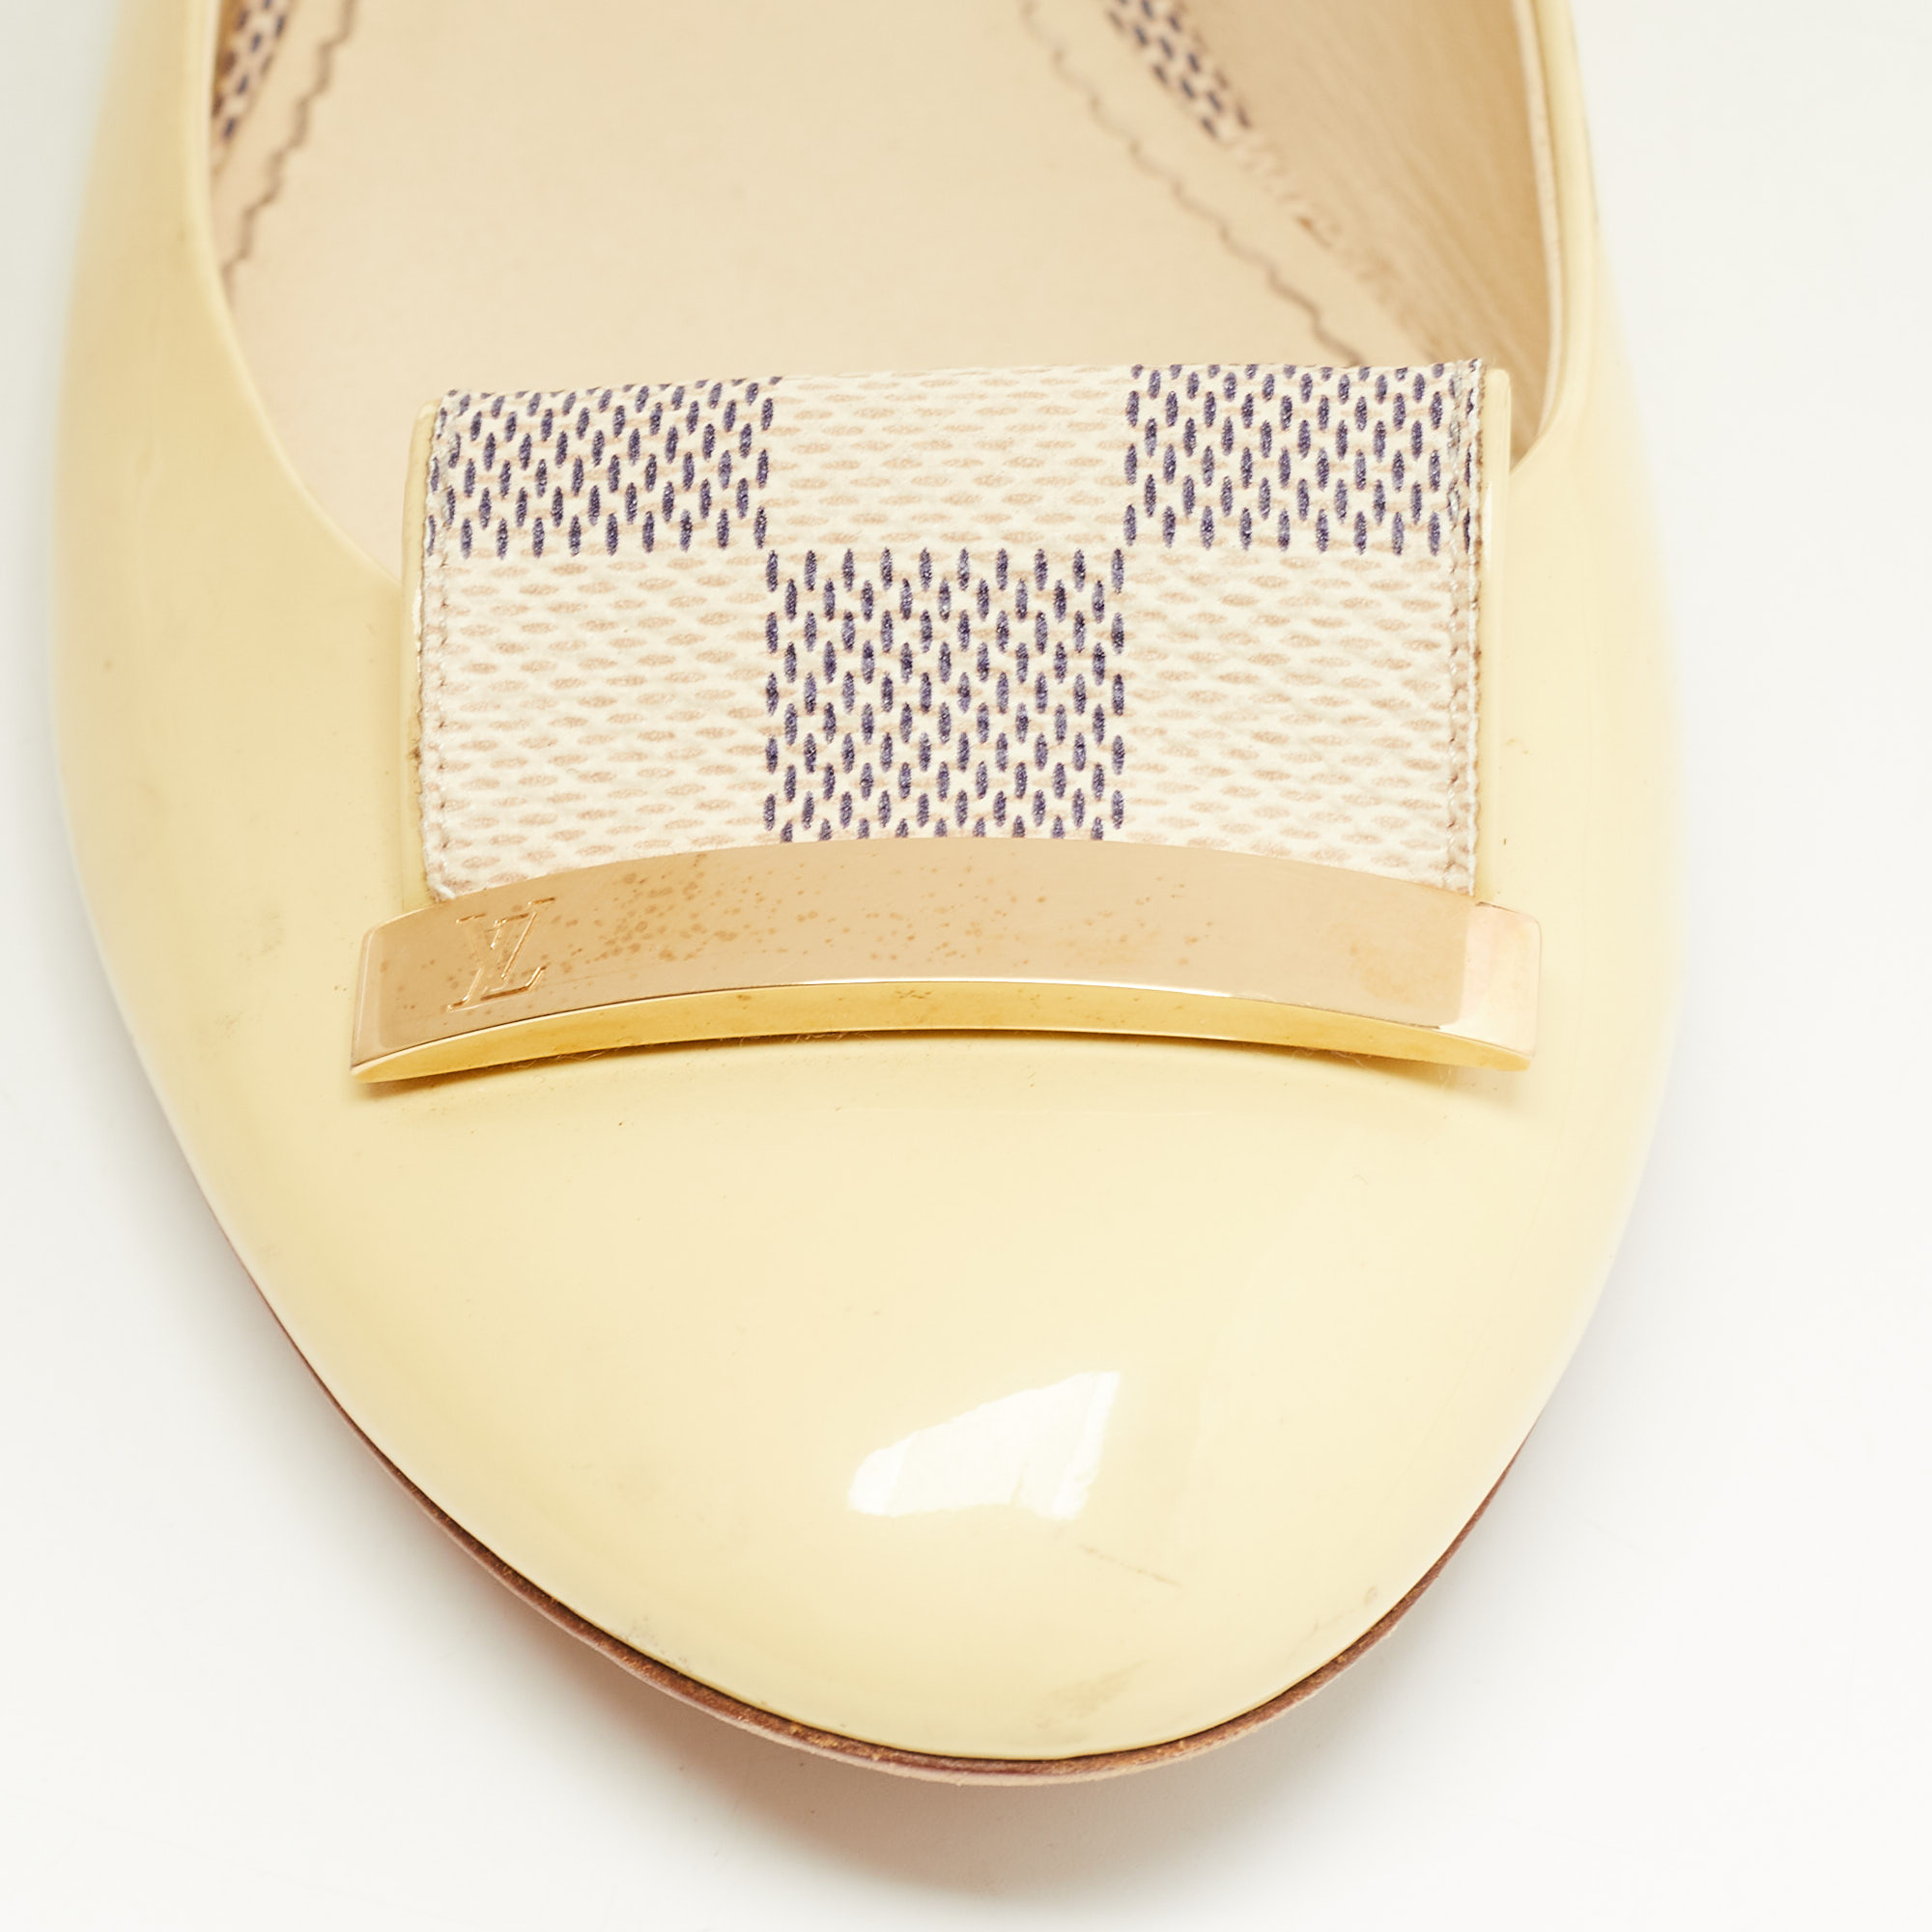 Louis Vuitton Cream Patent Leather Damier Azur Bow Ballet Flats Size 36